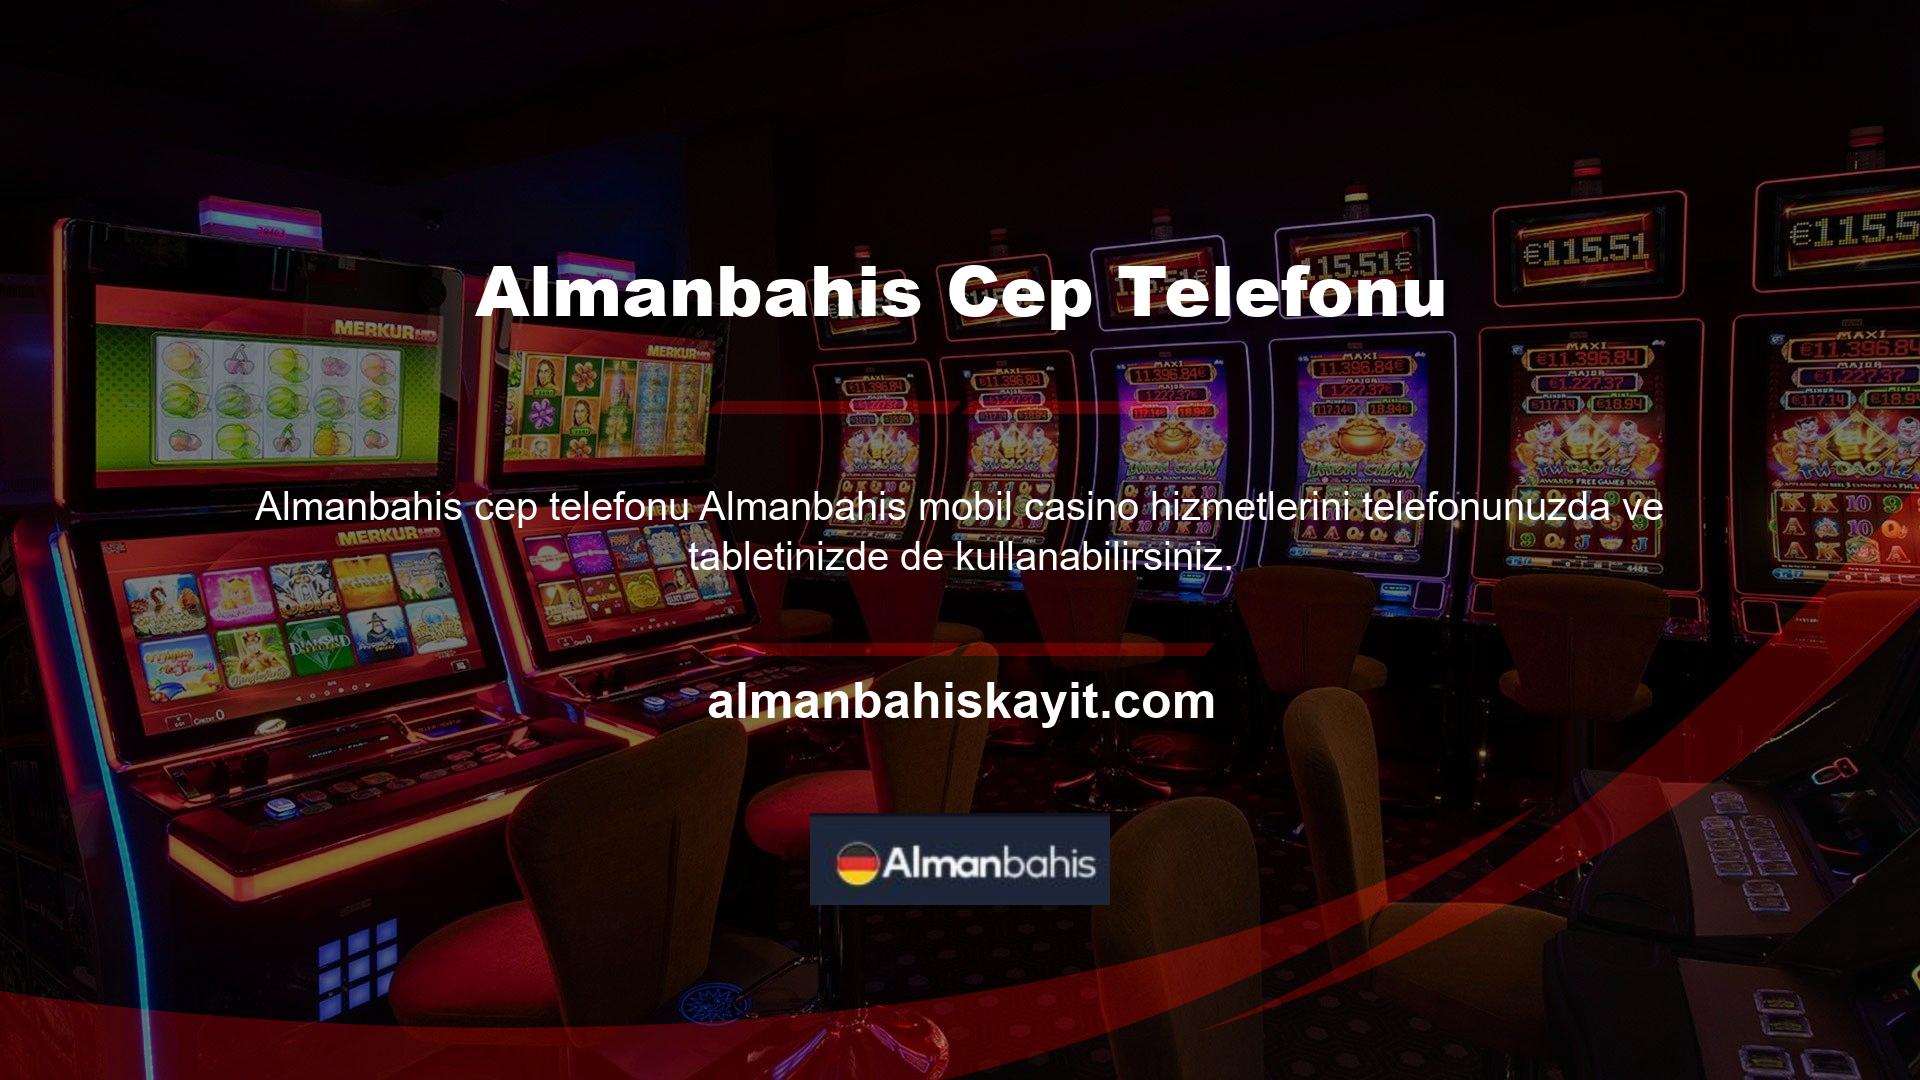 Almanbahis web sitesi, gün boyu mobil bahislerin mevcut olduğu mobil Casinoların yanı sıra canlı bahis ve poker hizmetleri de sunmaktadır